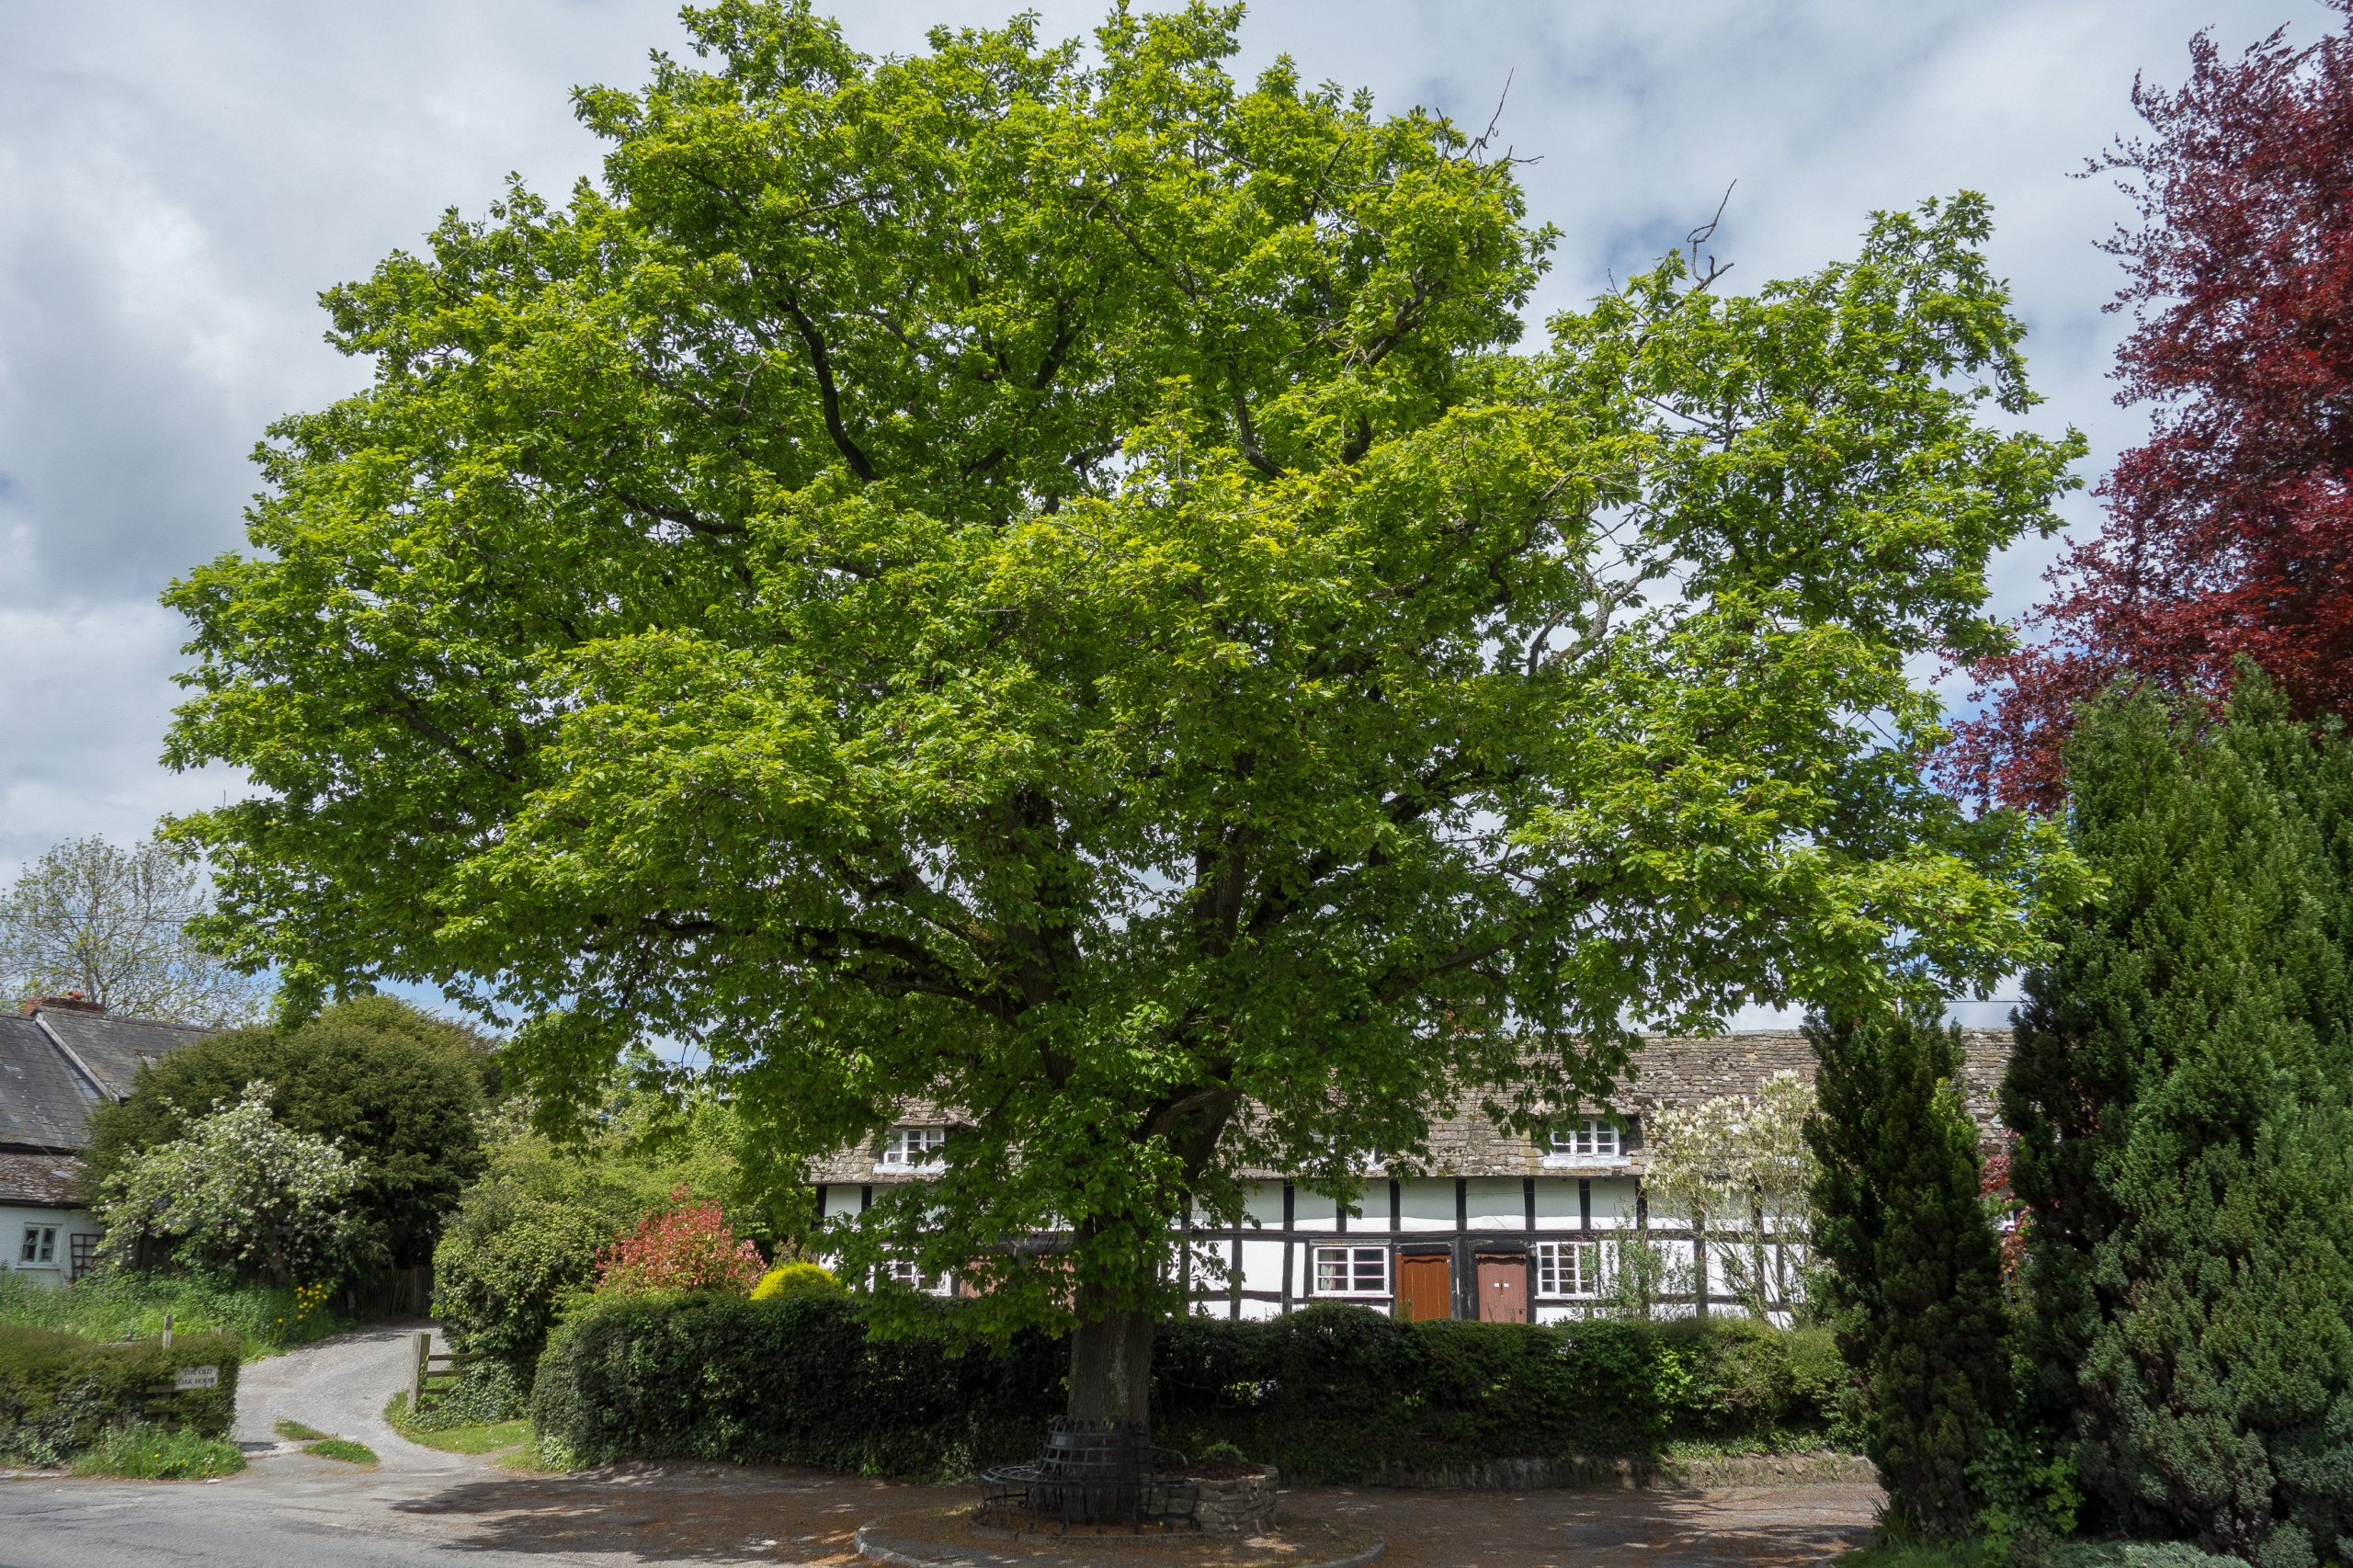 Oak tree in Pembridge